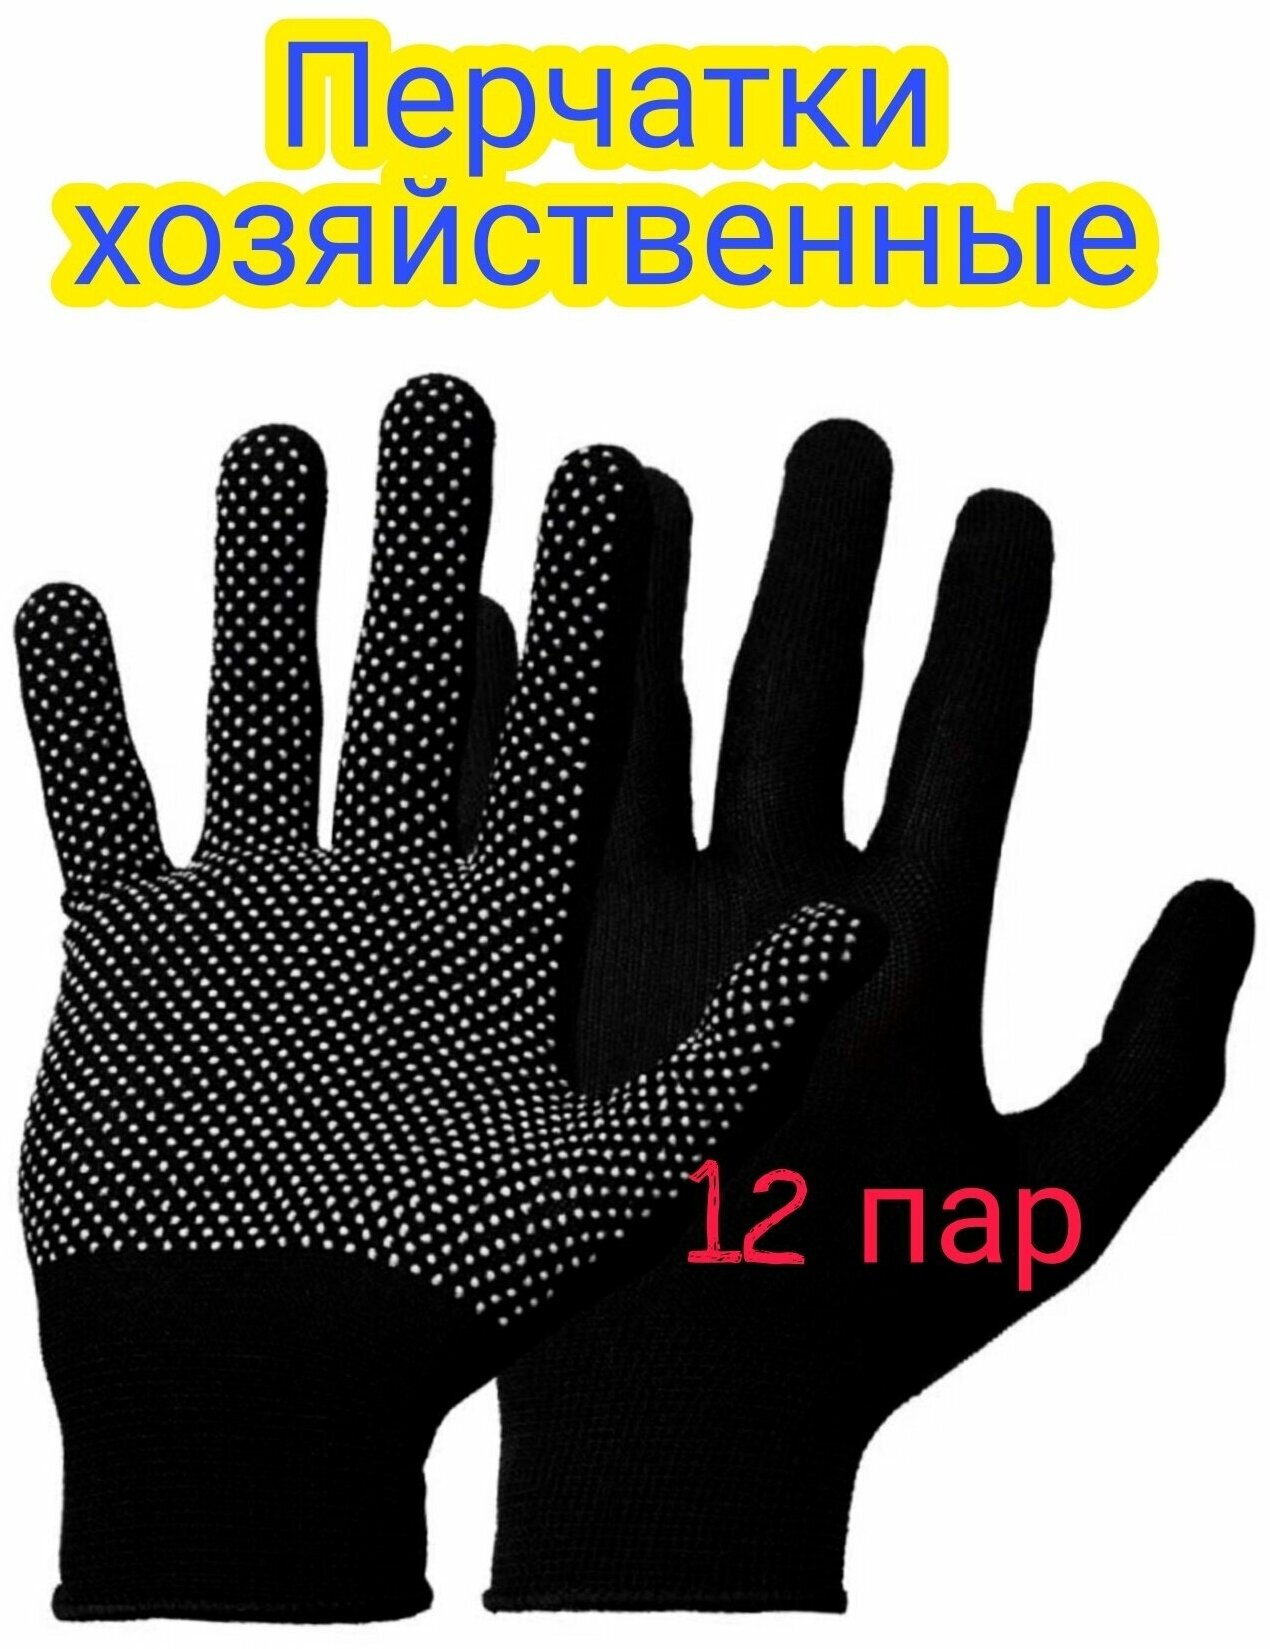 Перчатки хозяйственные бытовые текстильные черные дышащие 12 пар в наборе